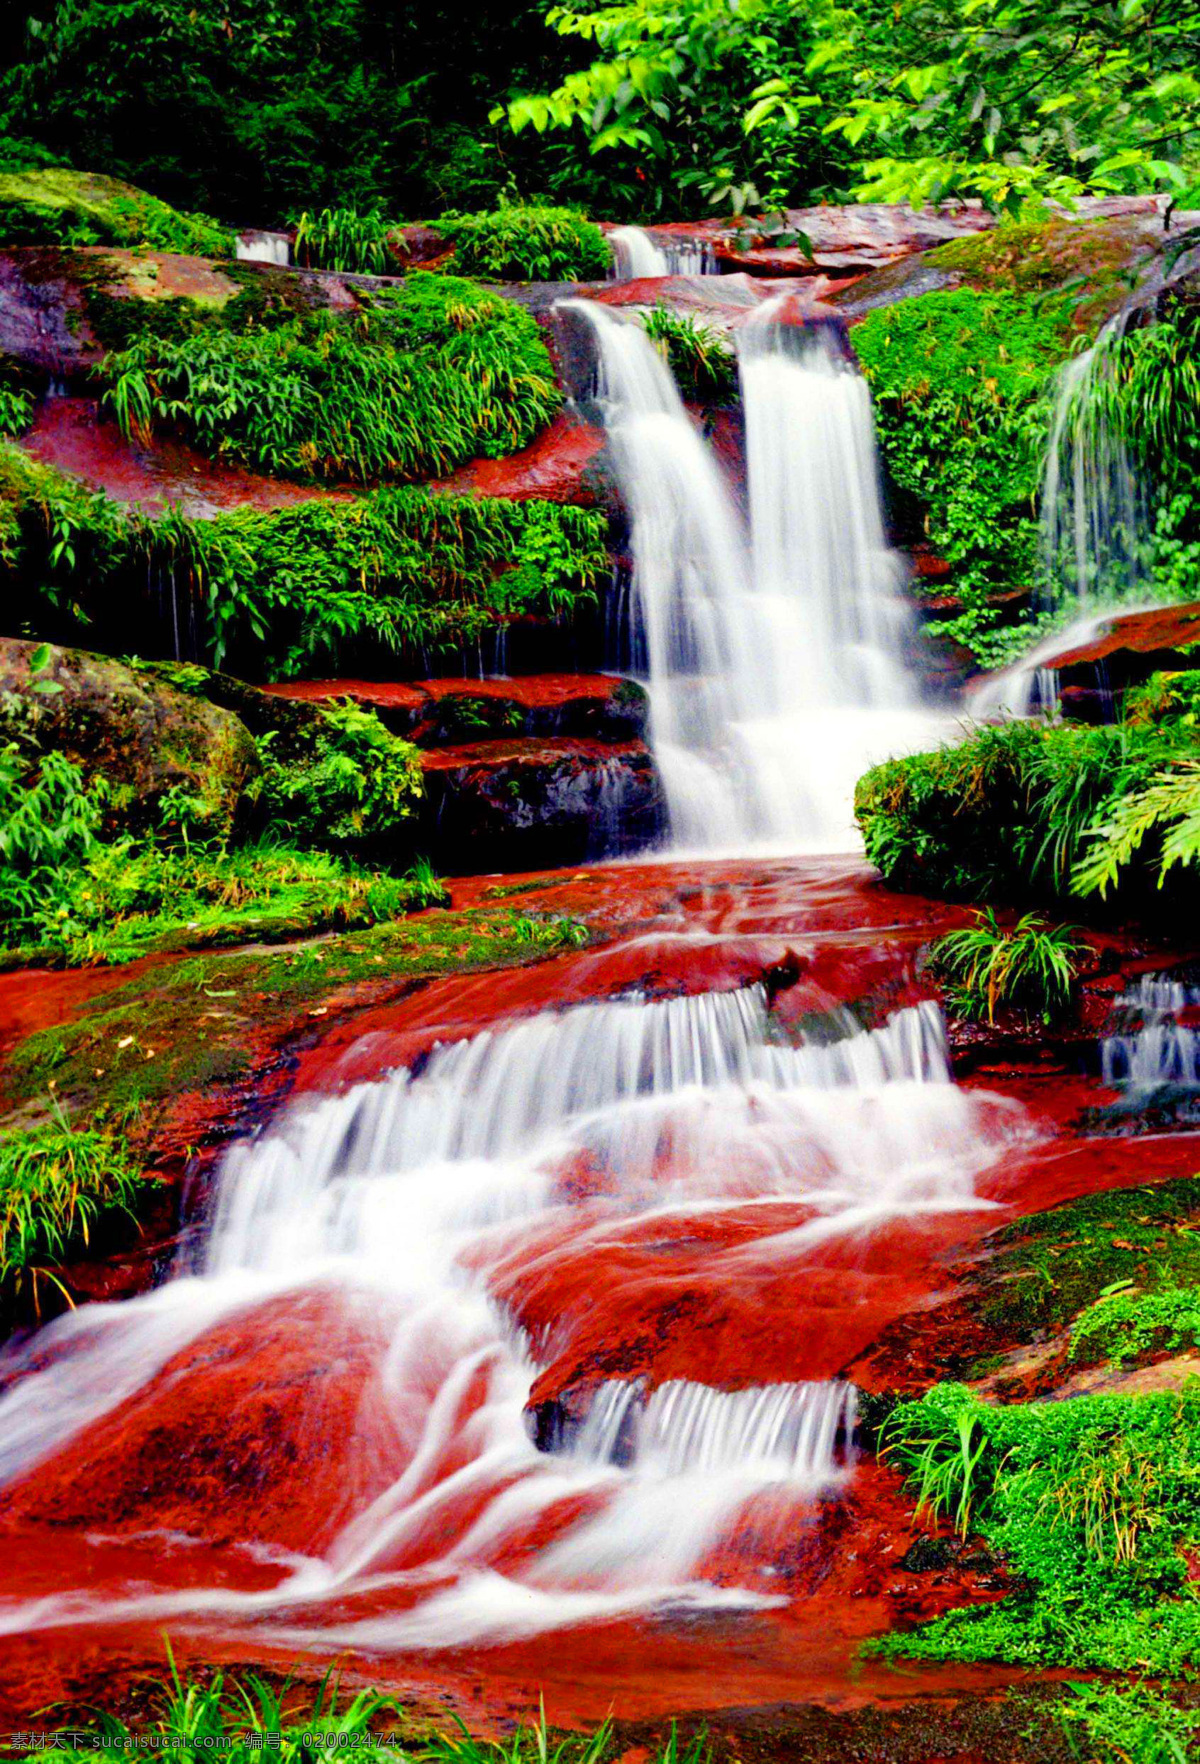 赤水瀑布 赤水 赤水风景 赤水大瀑布 赤水美景 旅游摄影 国内旅游